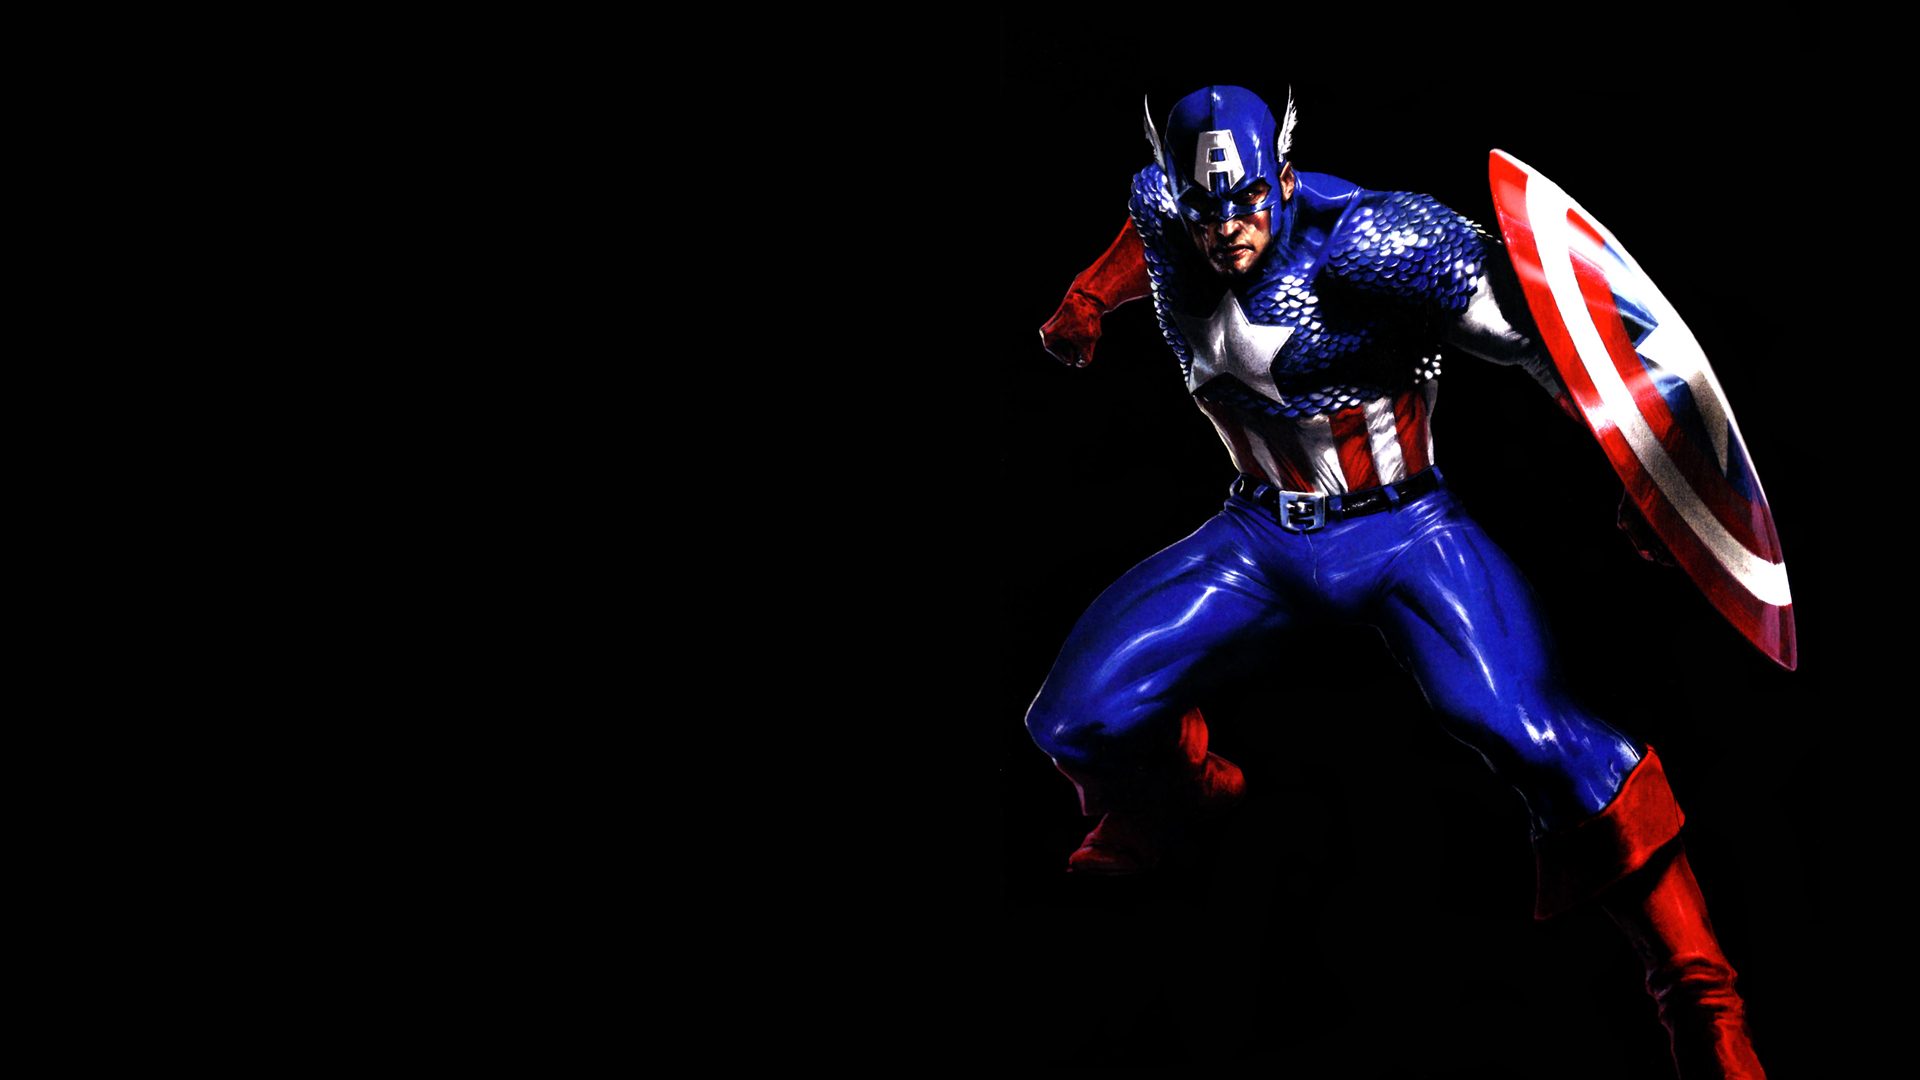 キャプションの壁紙,架空の人物,スーパーヒーロー,アクションフィギュア,ヒーロー,キャプテン・アメリカ